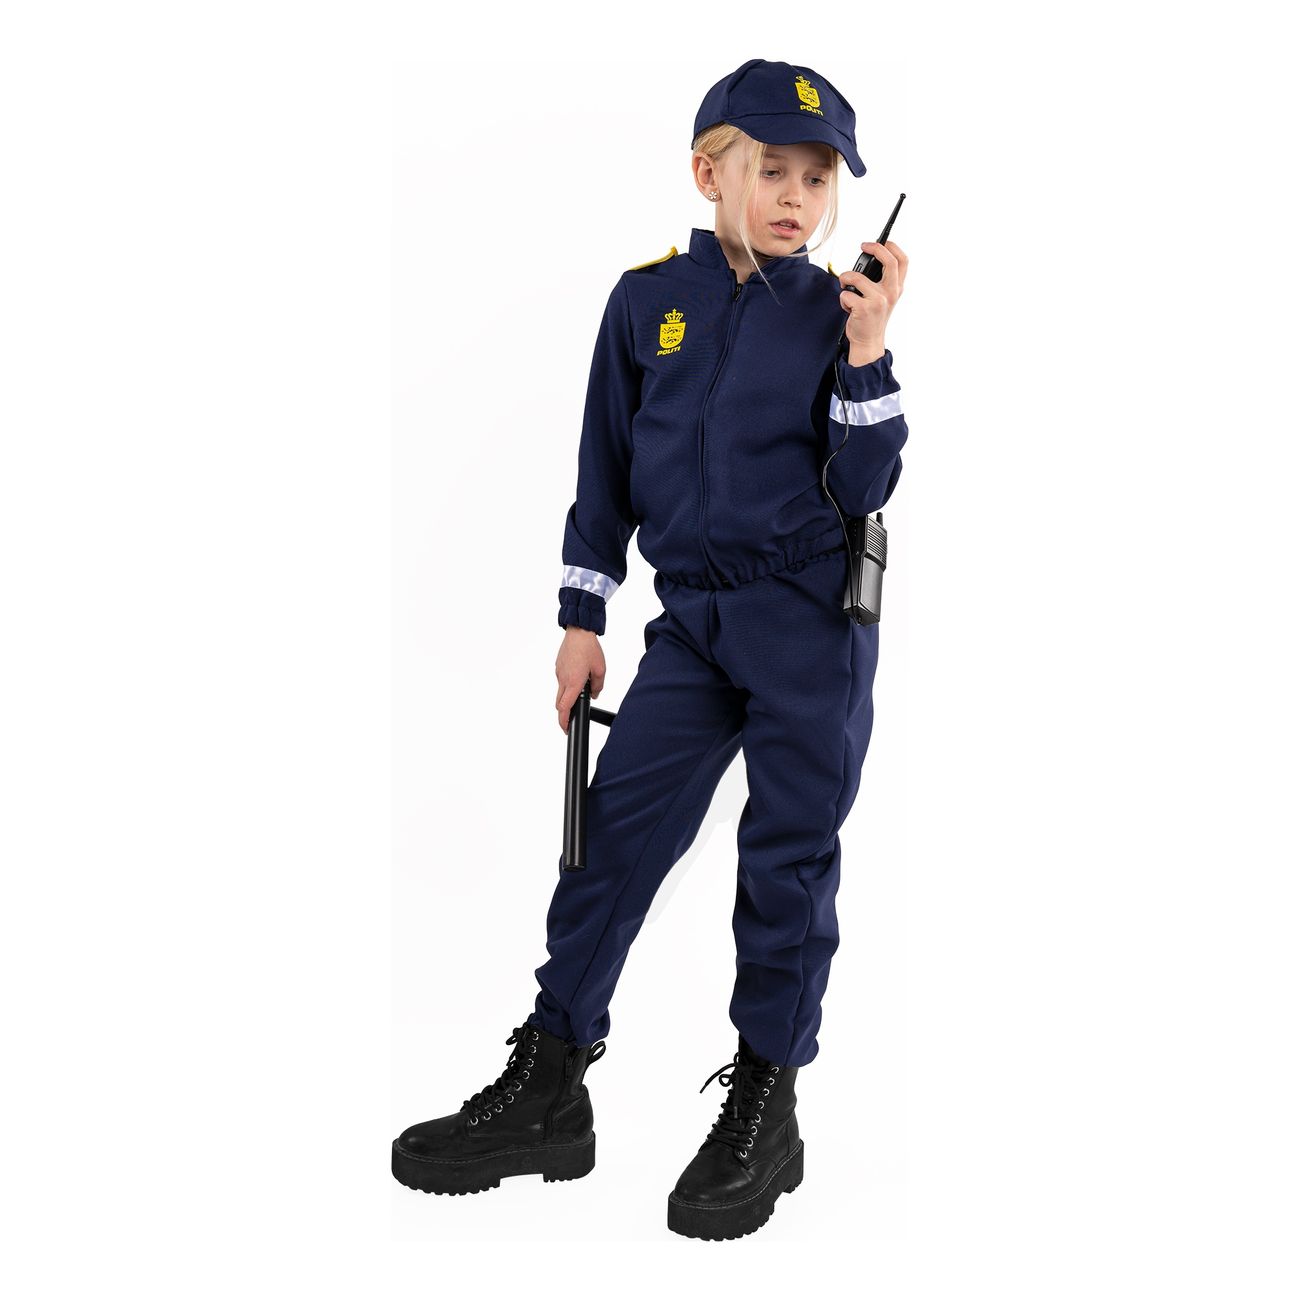 Dempsey Mig Medic Dansk Politi Børnekostume | Partykungen